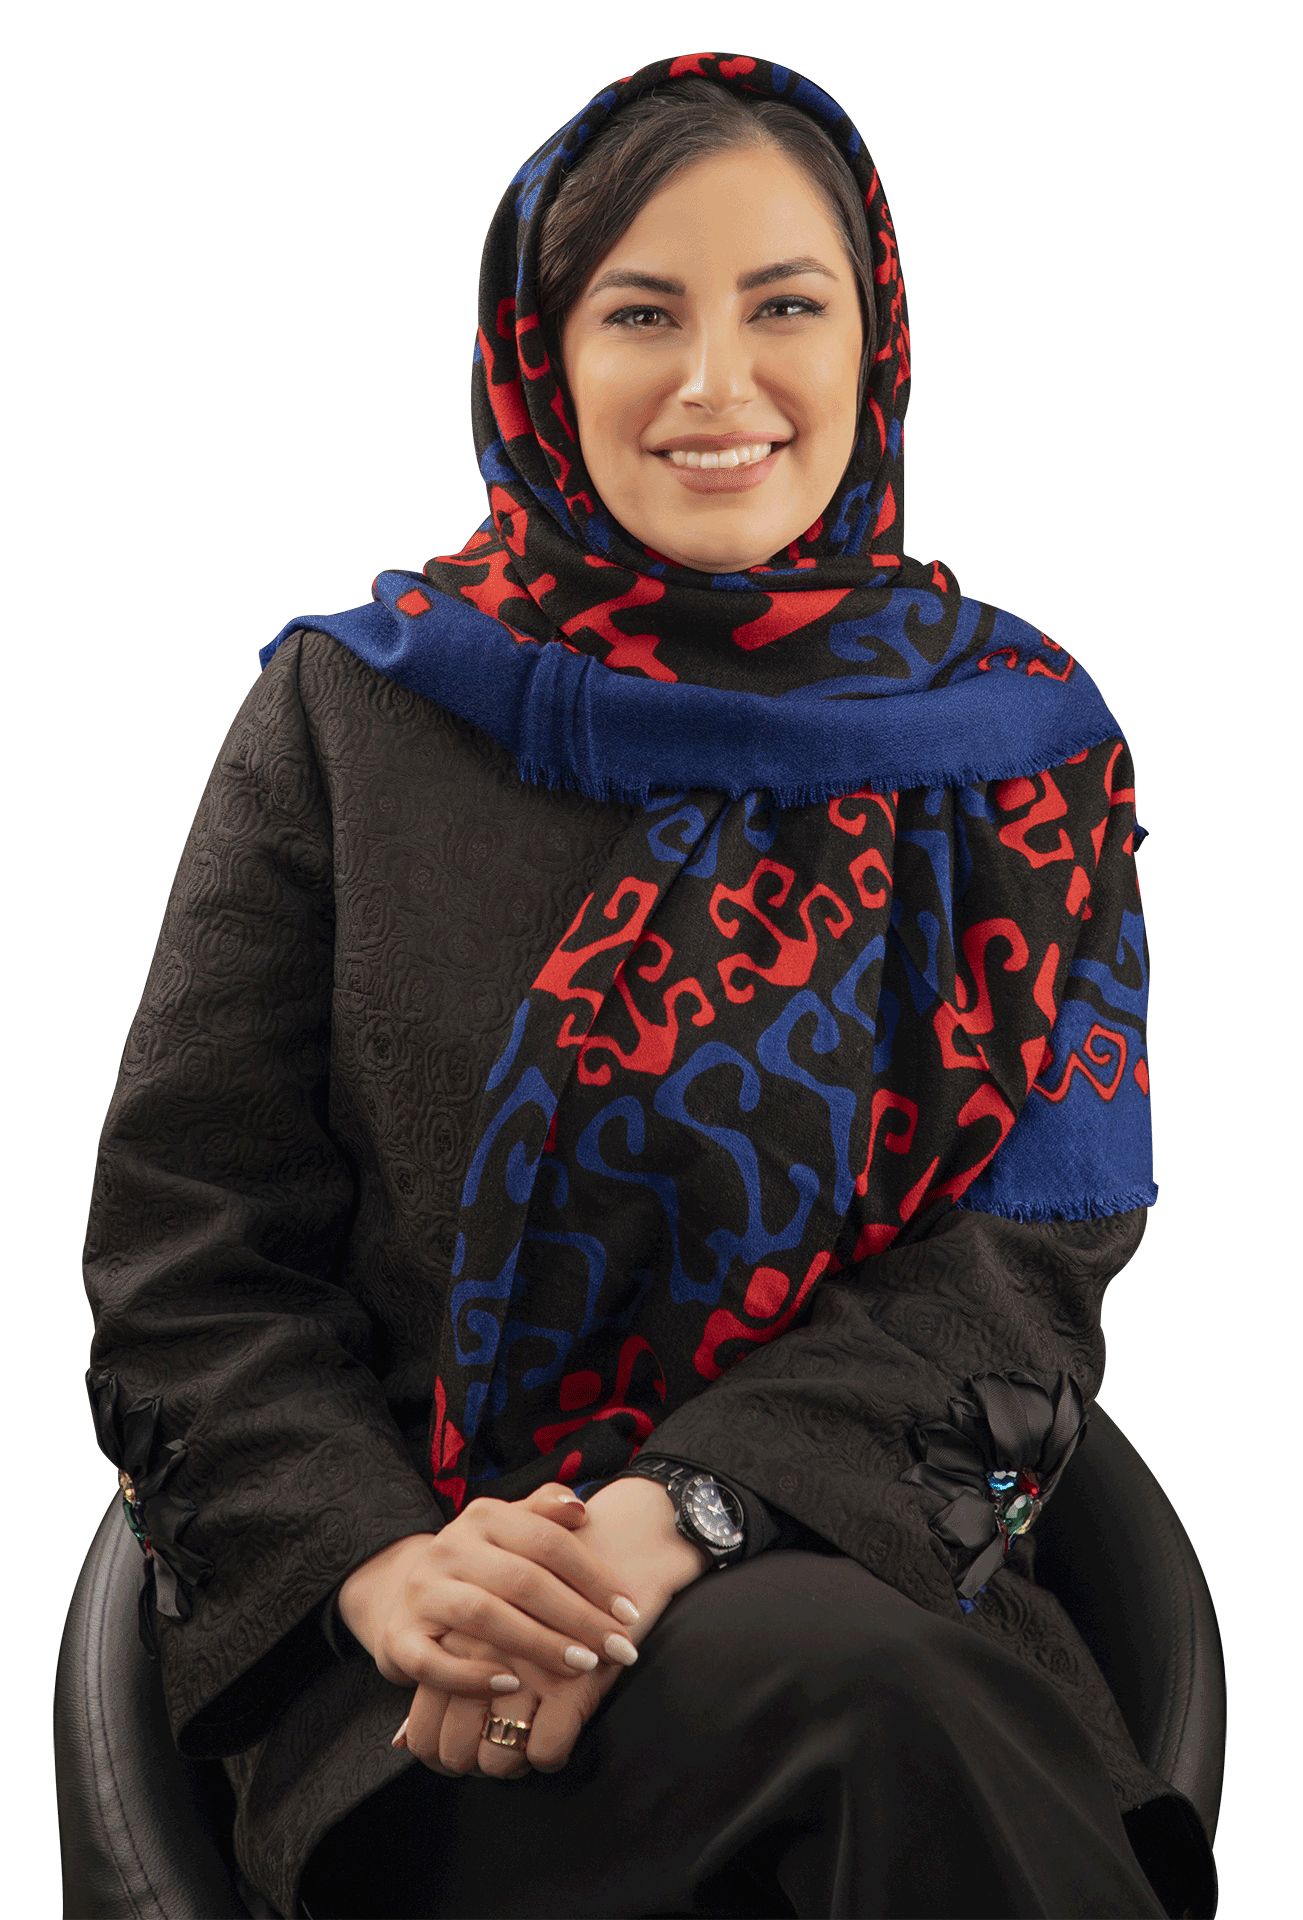 Dr Maryam Aghaei